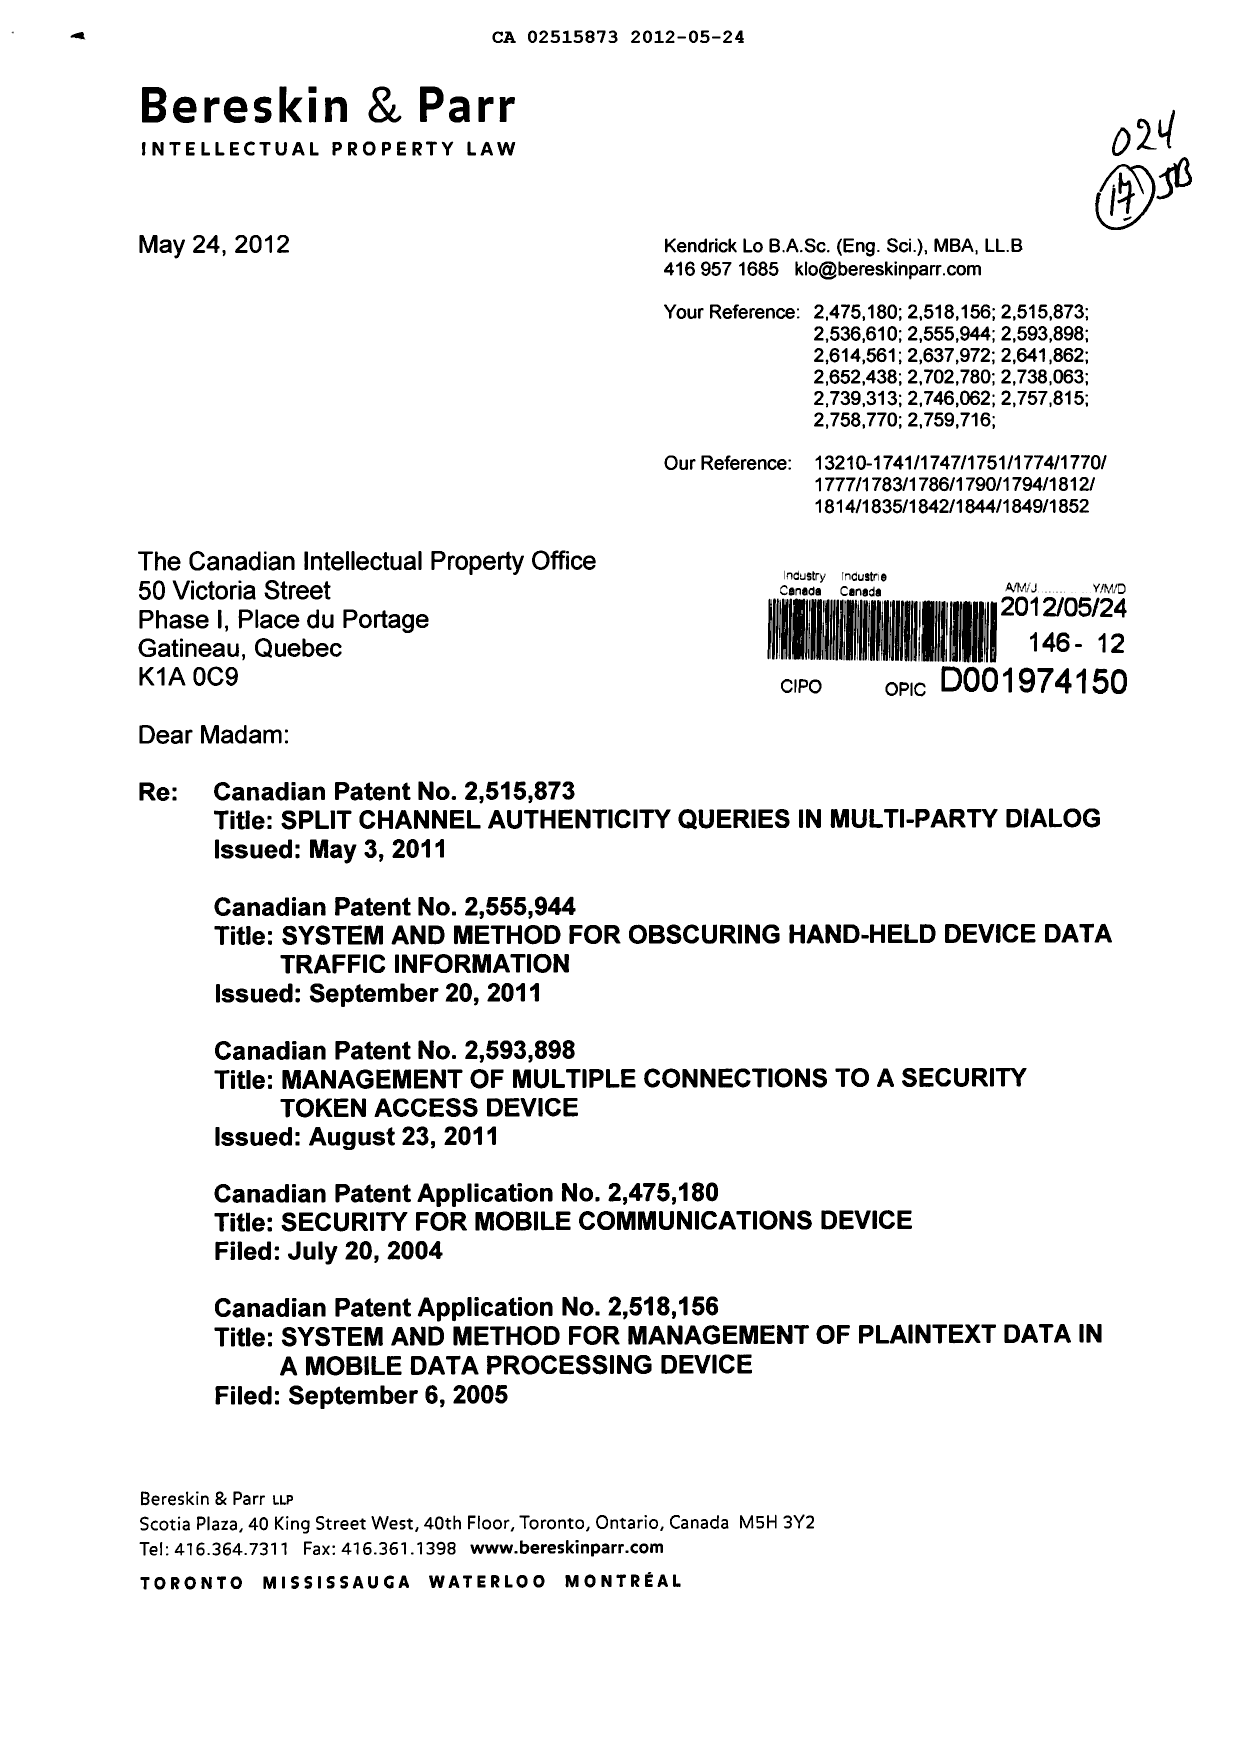 Document de brevet canadien 2757815. Correspondance 20120524. Image 1 de 5